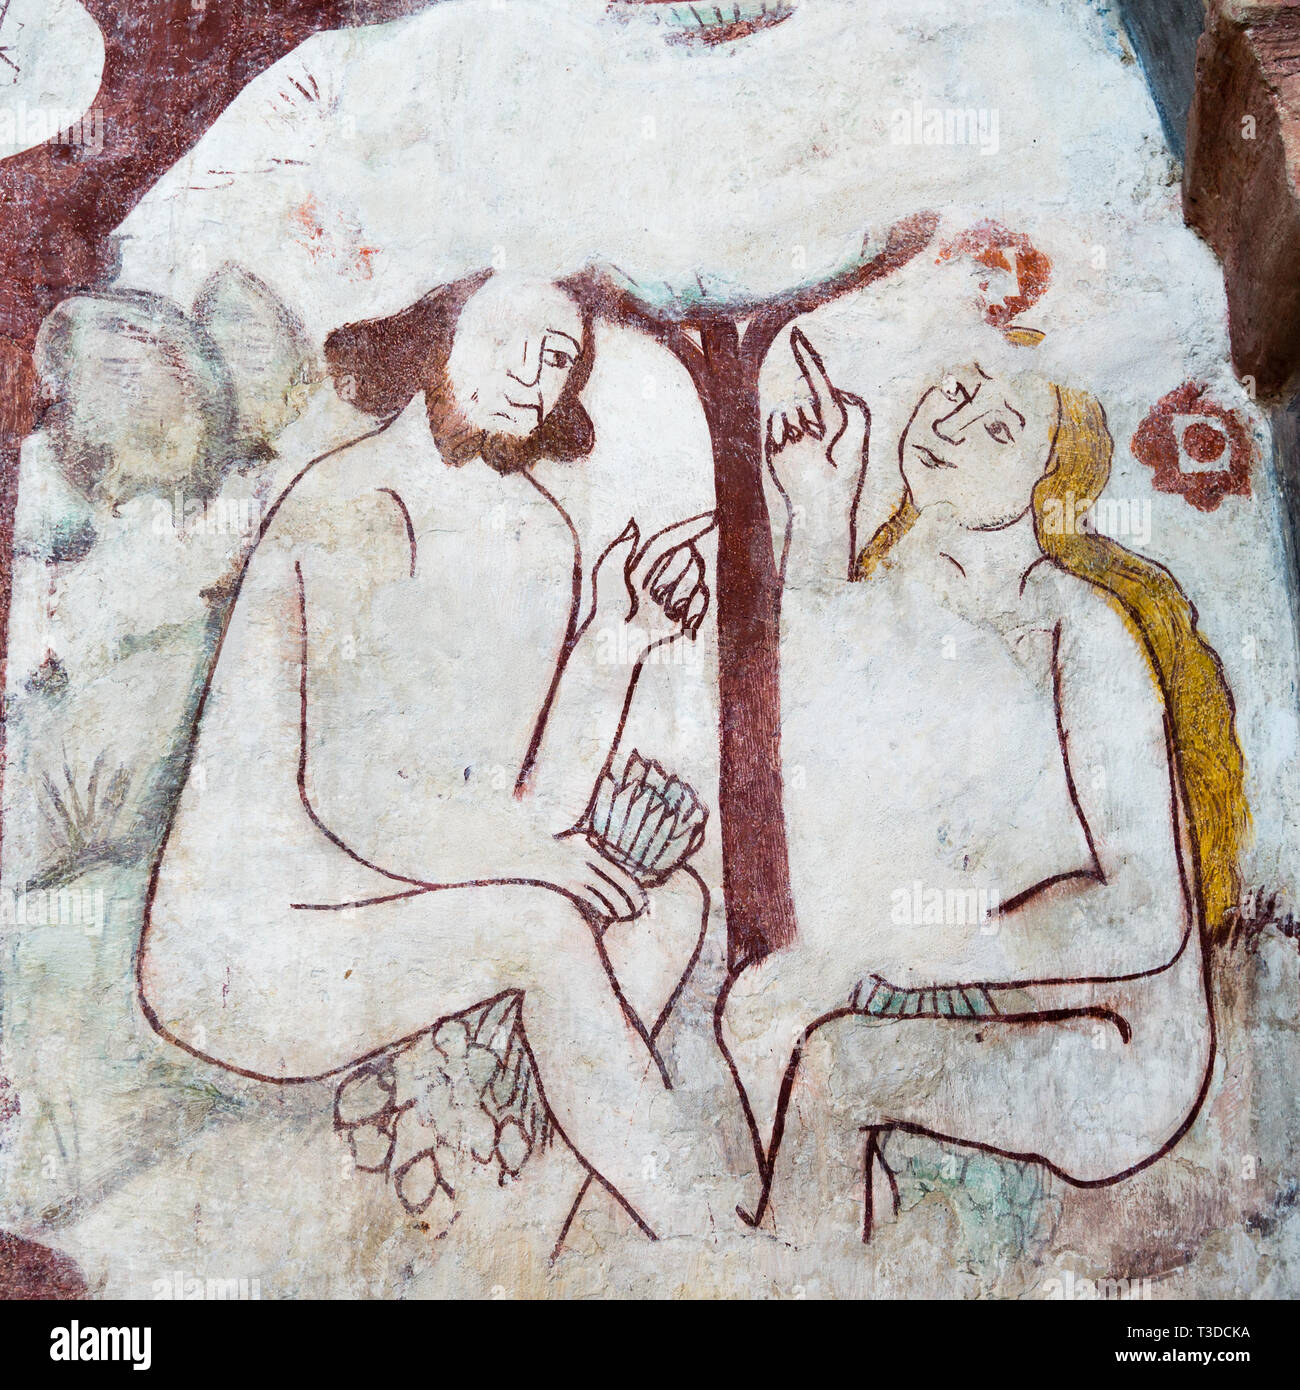 Adam und Eva unter dem Baum im Paradies und Chatten. Wandbild in Kavlinge Kirche, Schweden, 6. Mai 2015 - Stockfoto